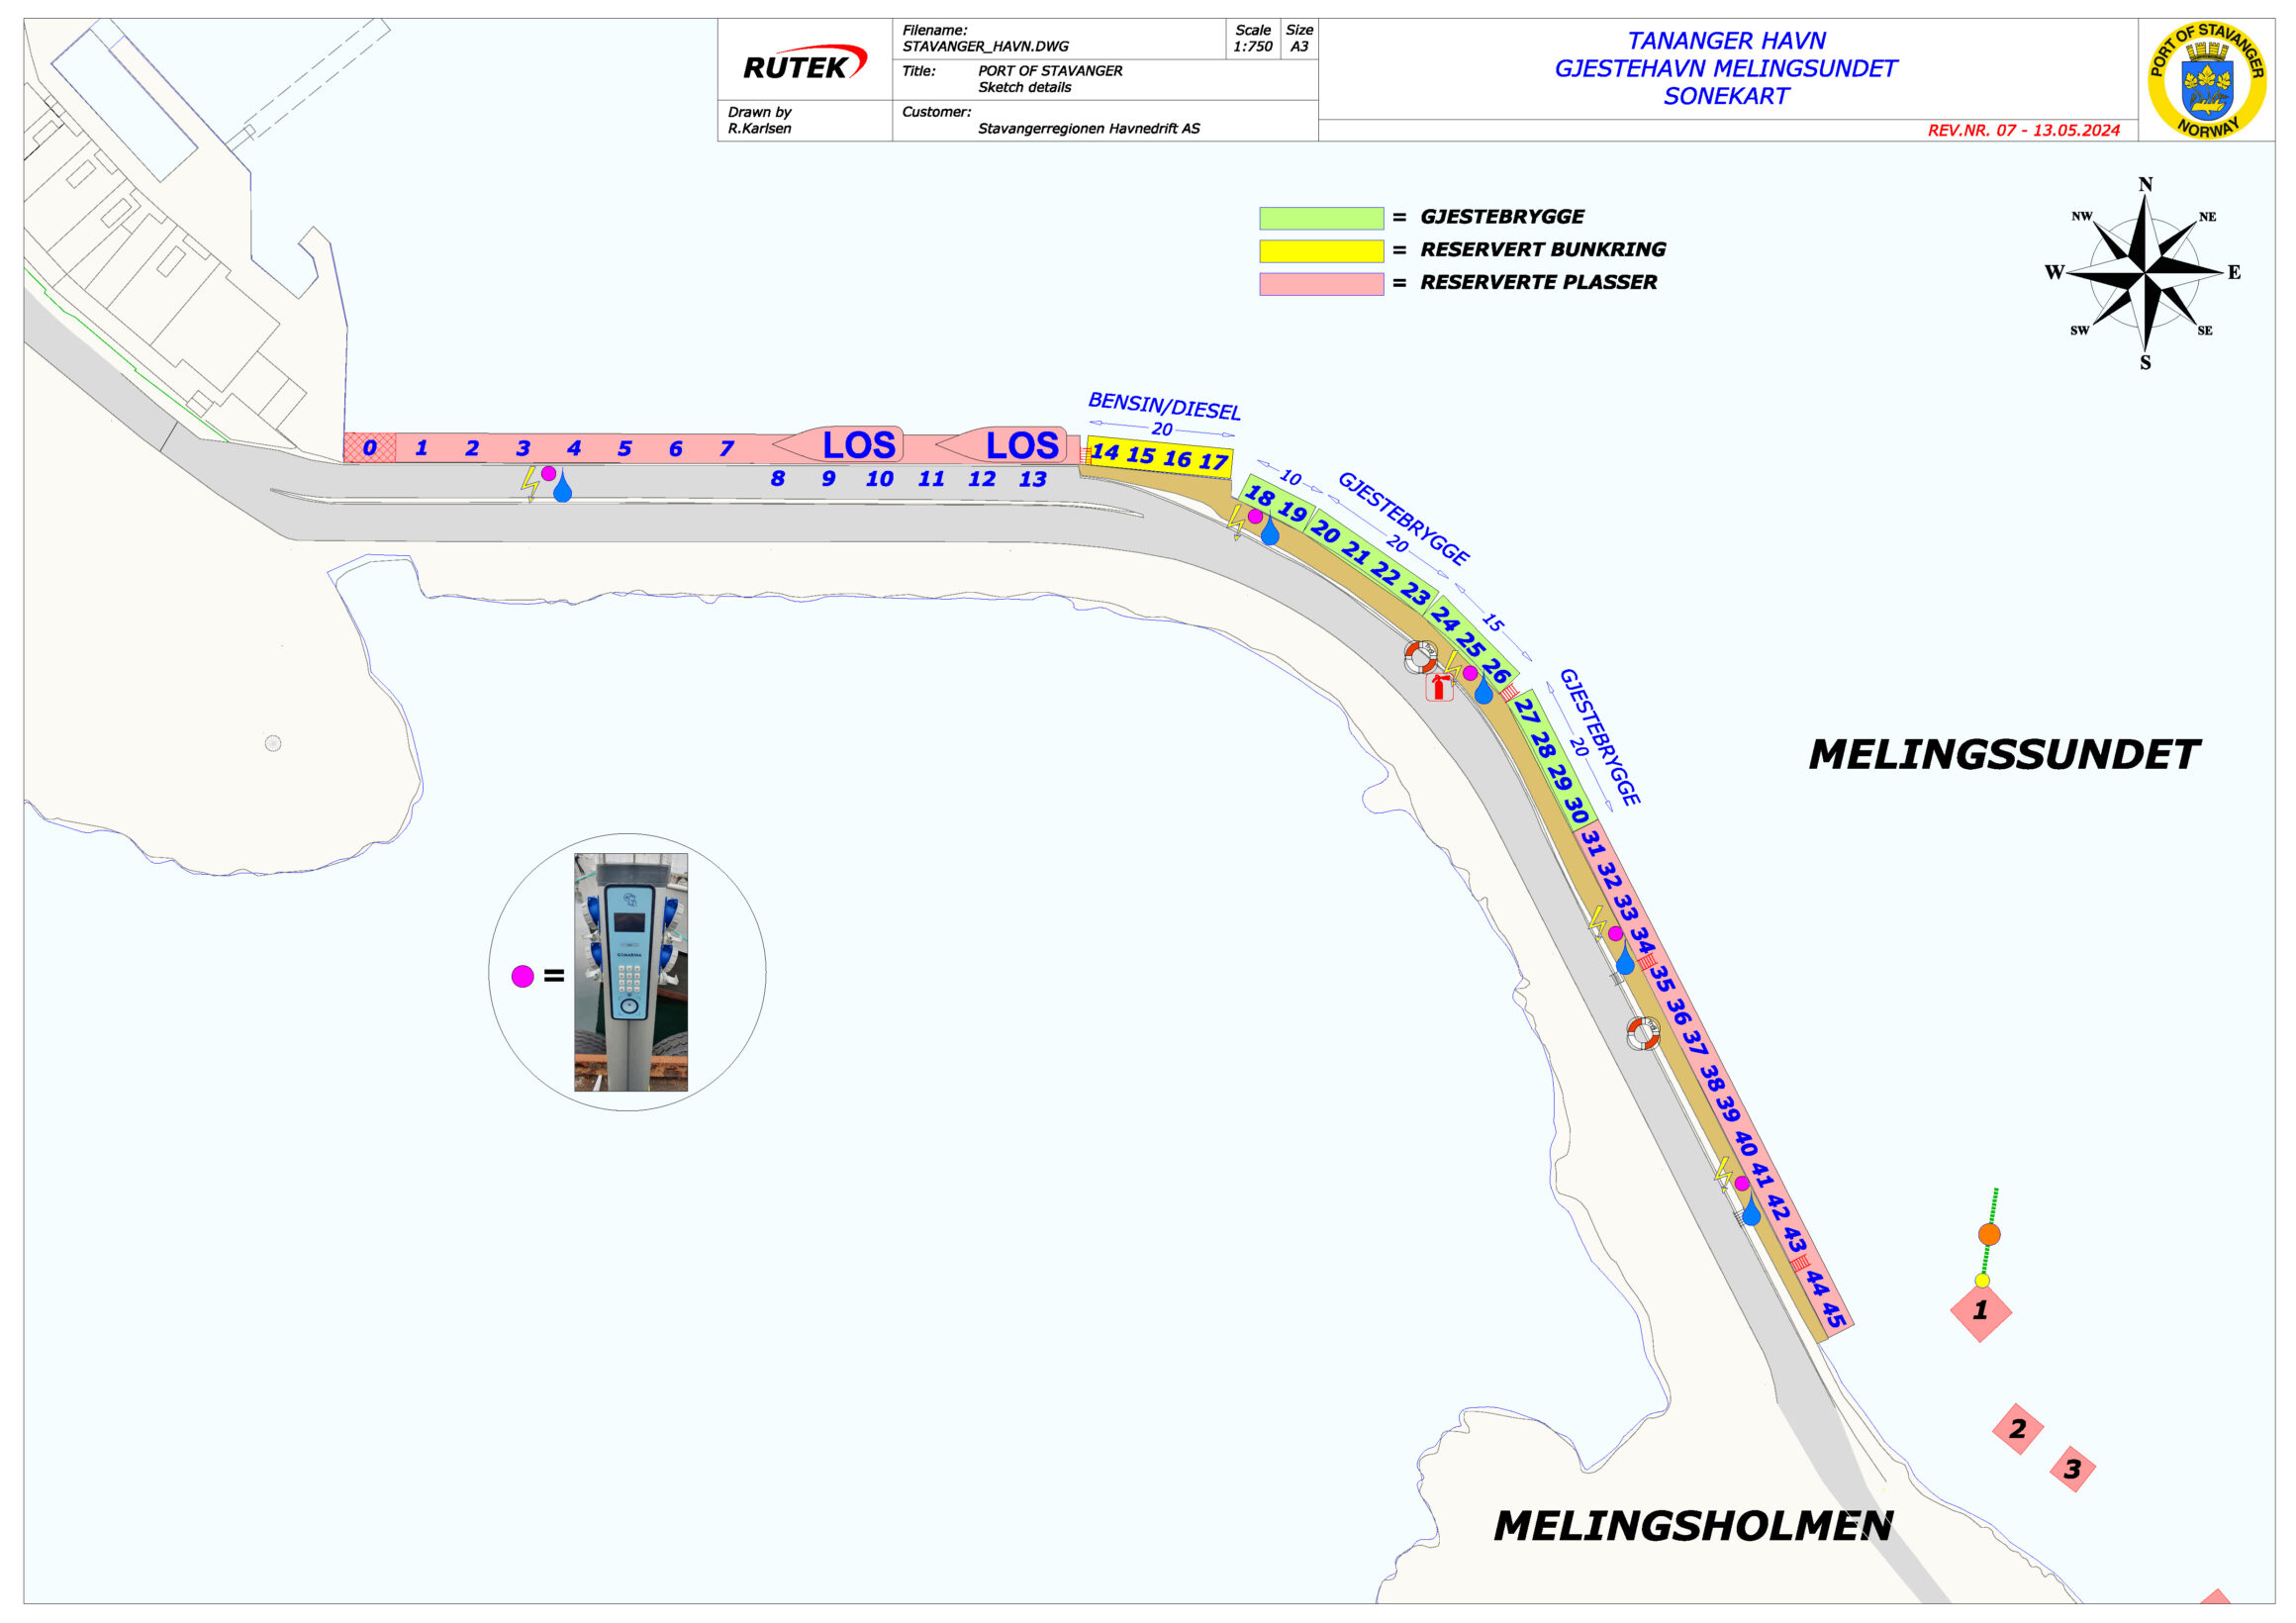 Sonekart Tananger gjestehavn (klikk på bildet for større kart i pdf format)